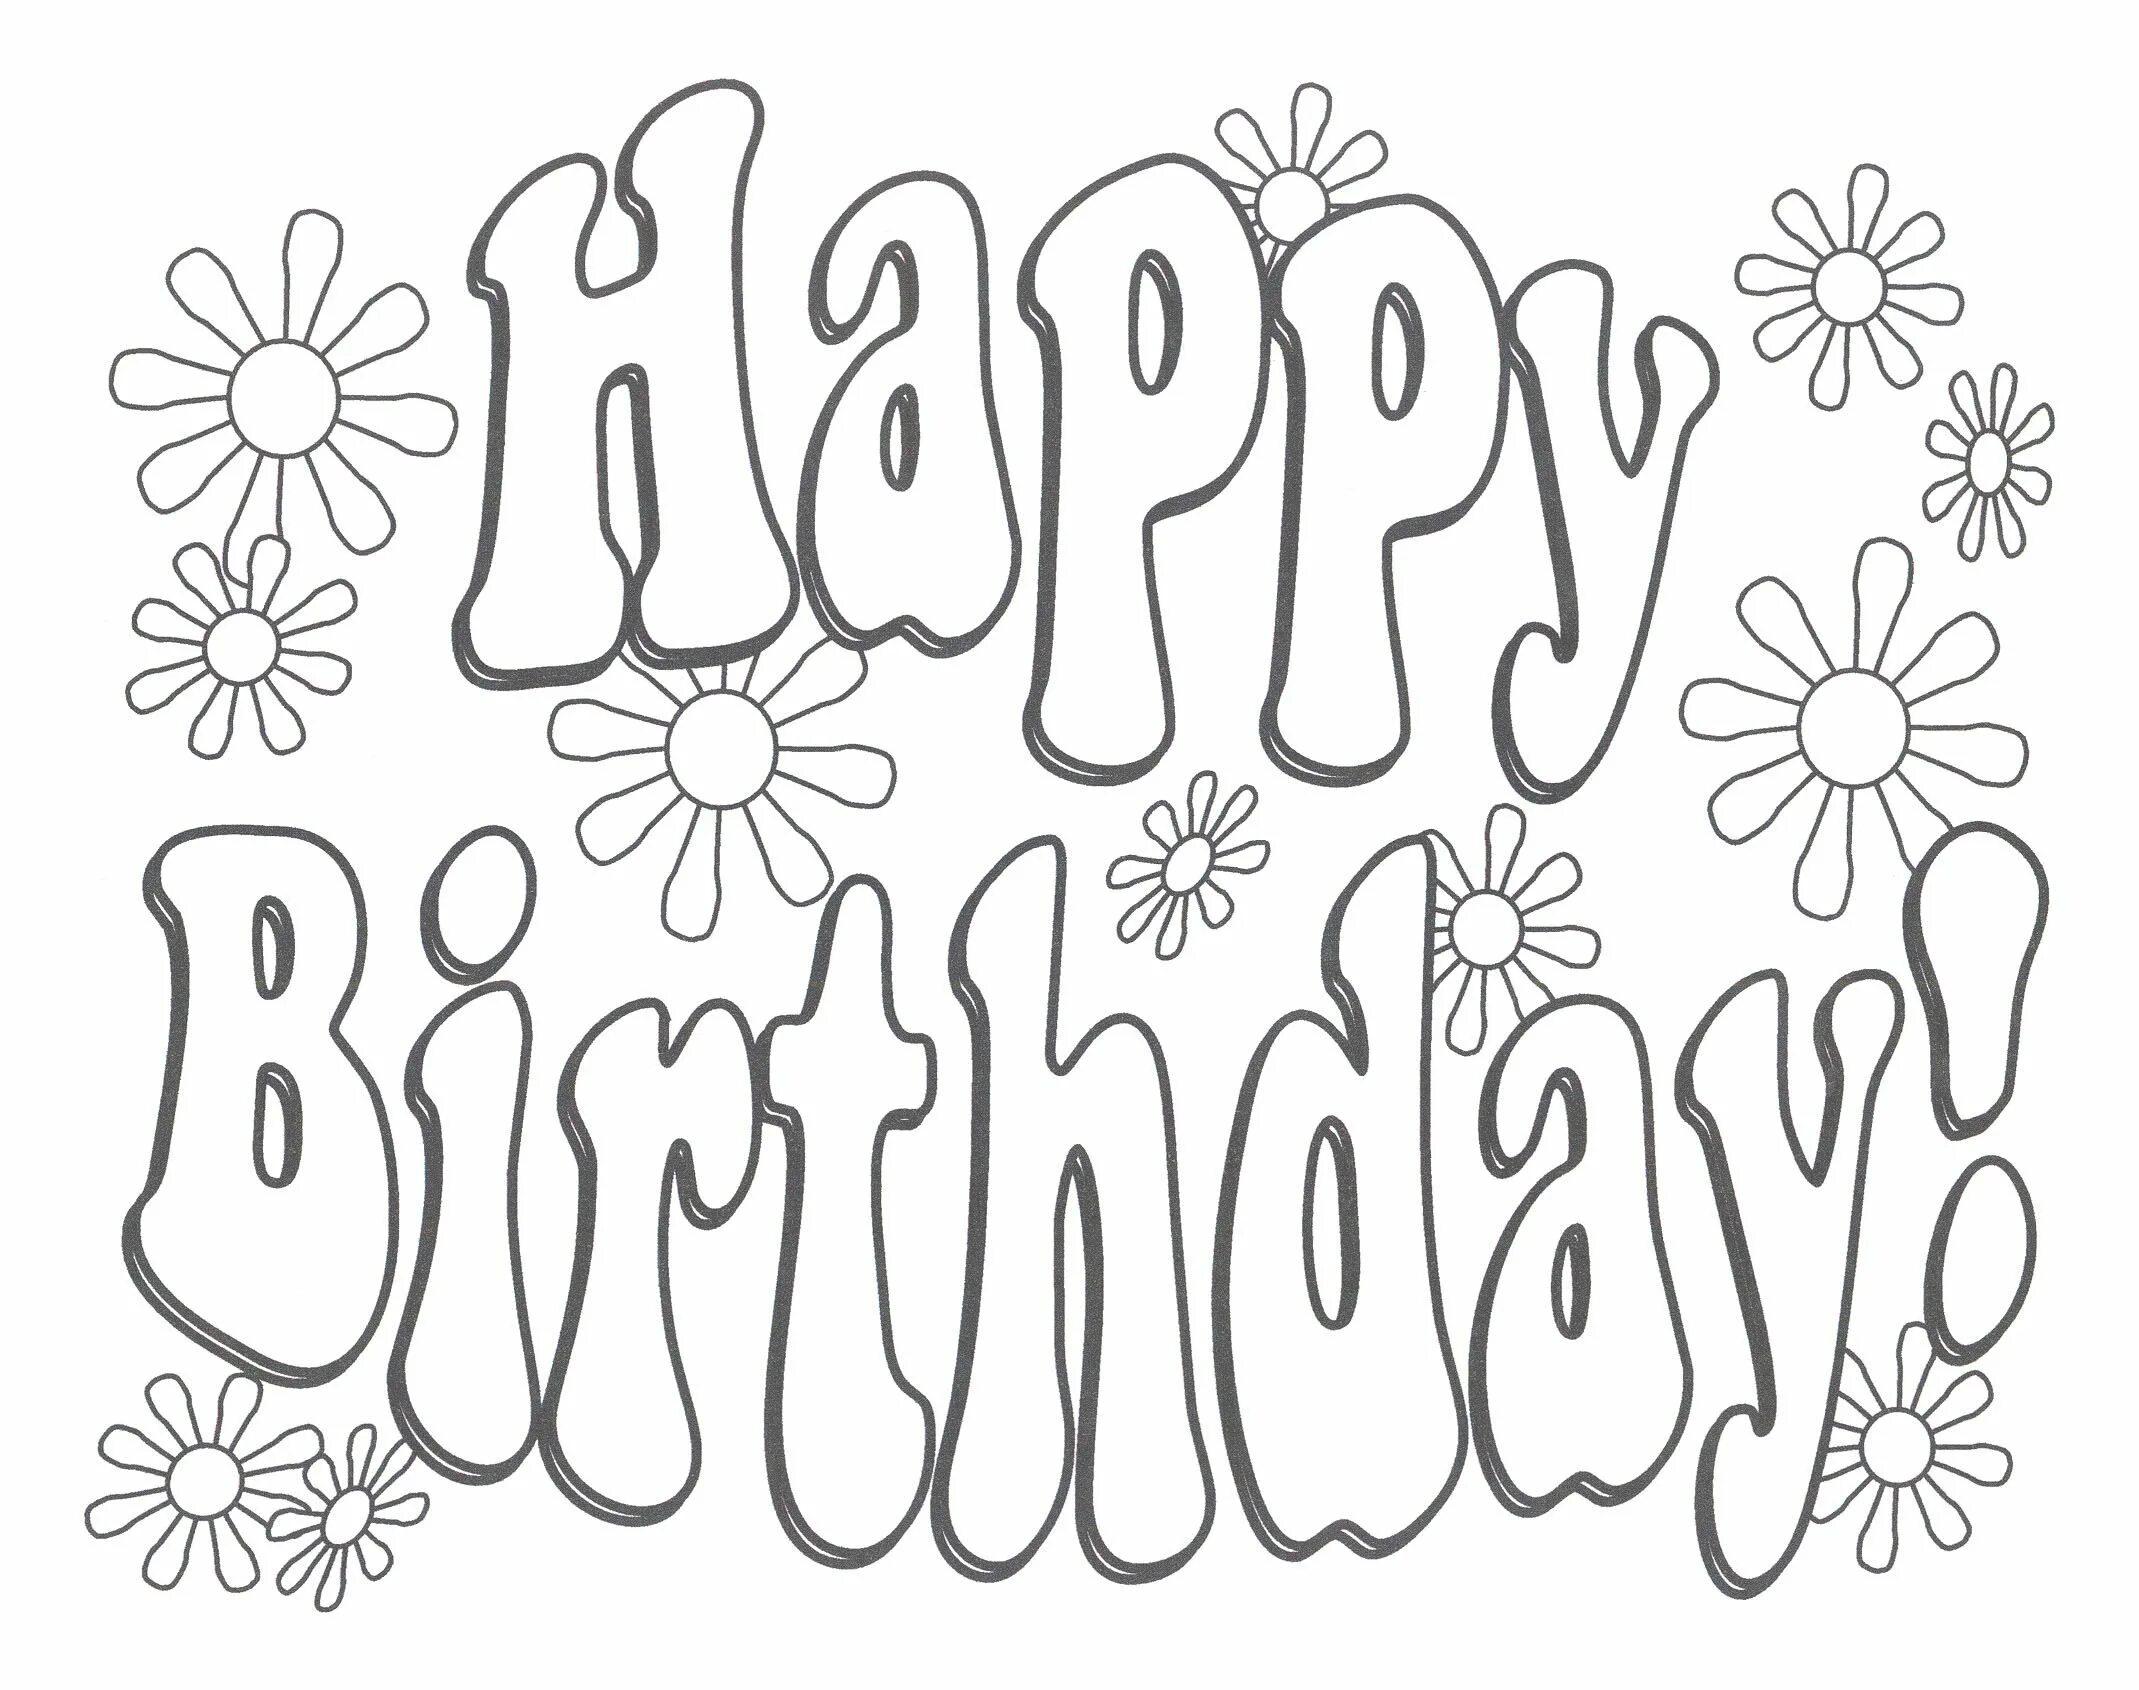 Awesome birthday wishes, nastya